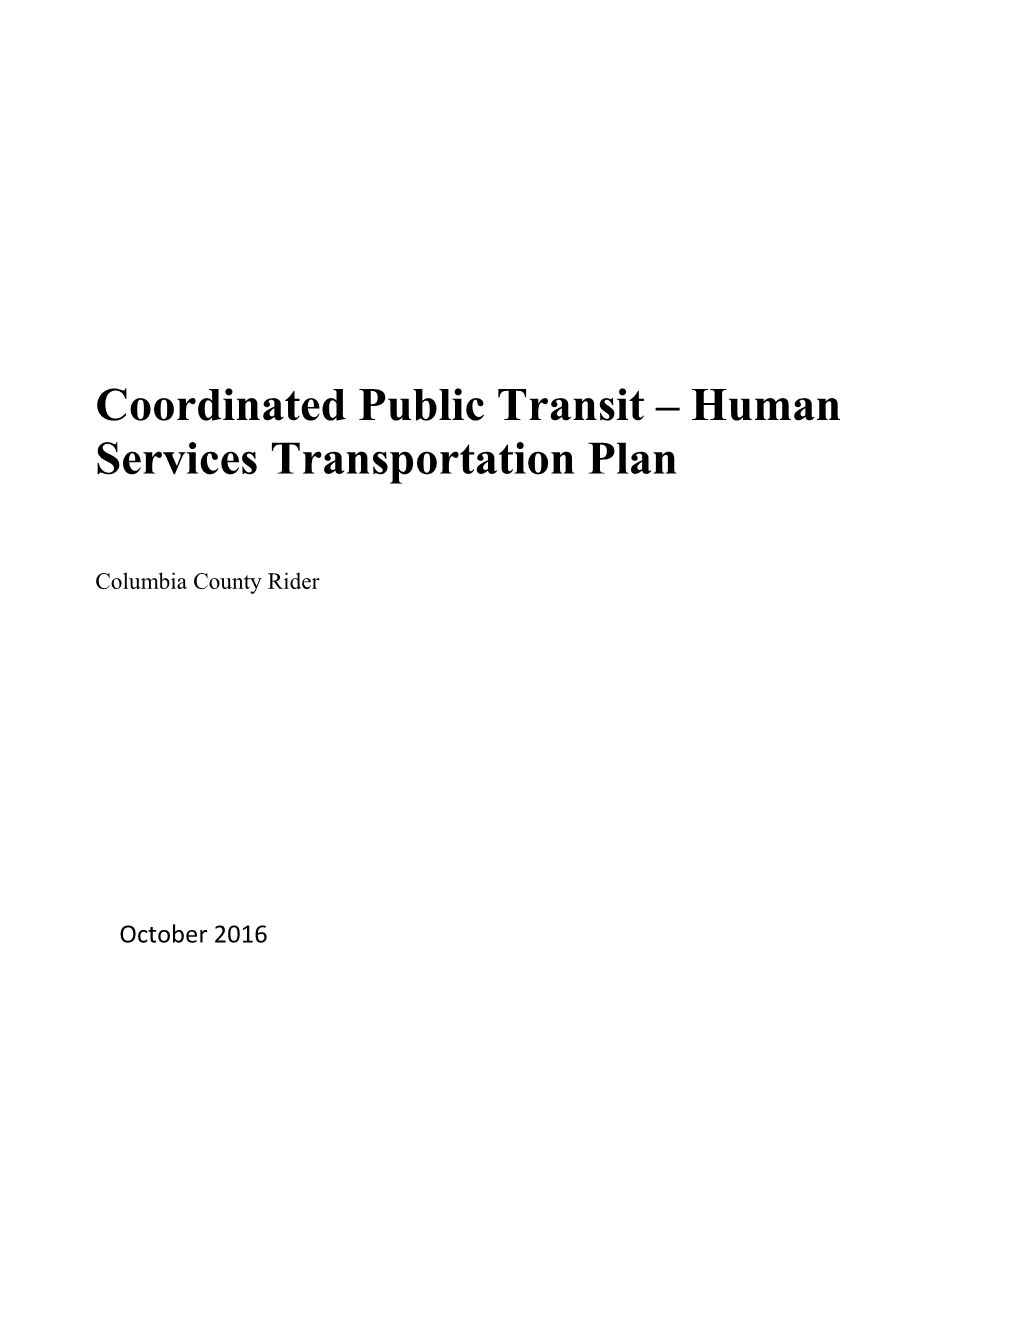 Transportation Impact Analysis